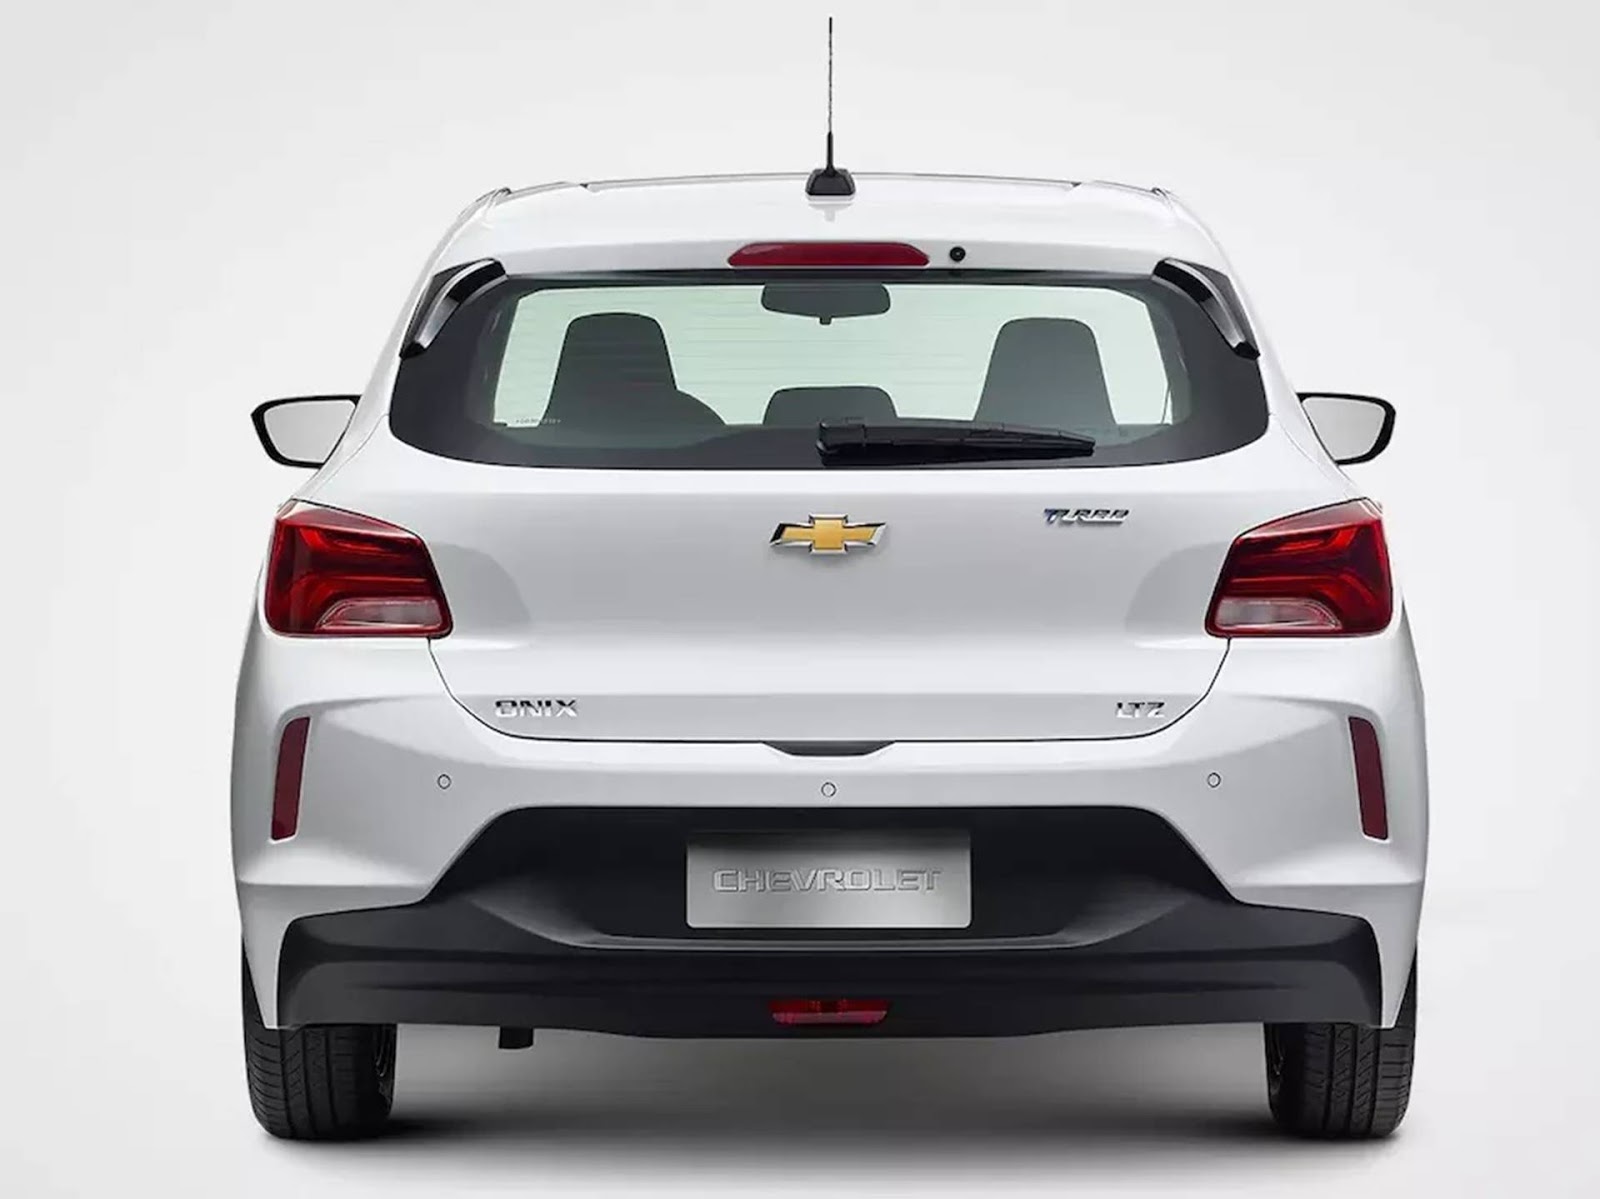 Novo GM Onix Hatch 2020: fotos, dimensões e consumo